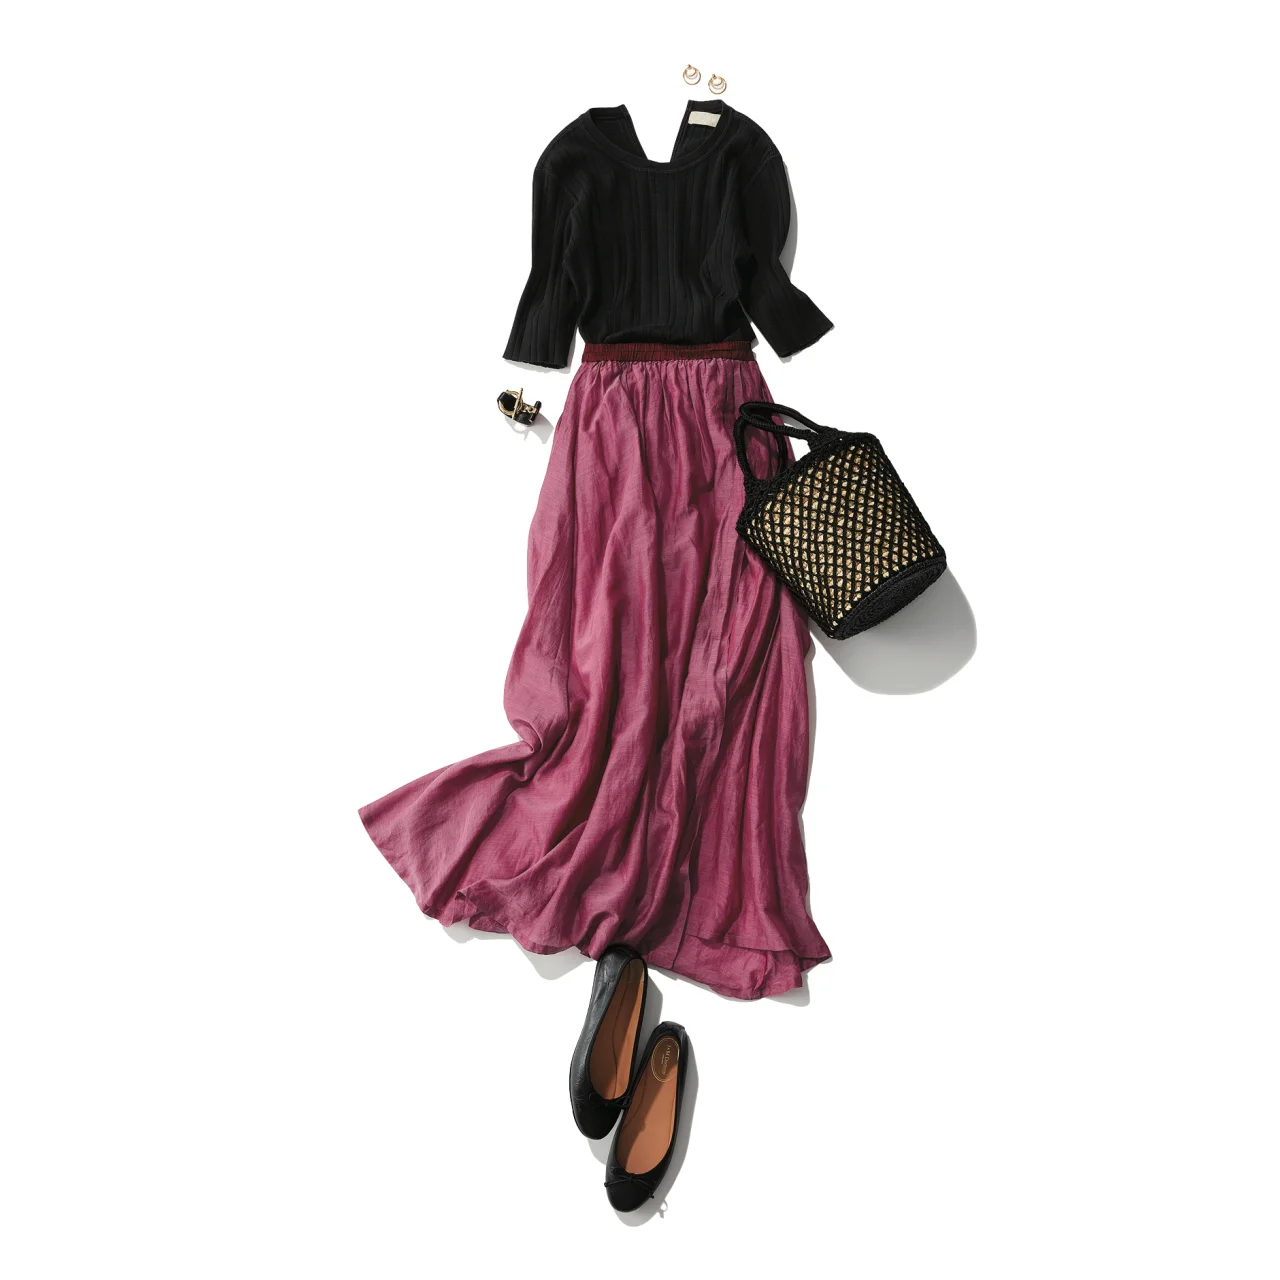 ピンクスカート×黒カットソーのファッションコーデ